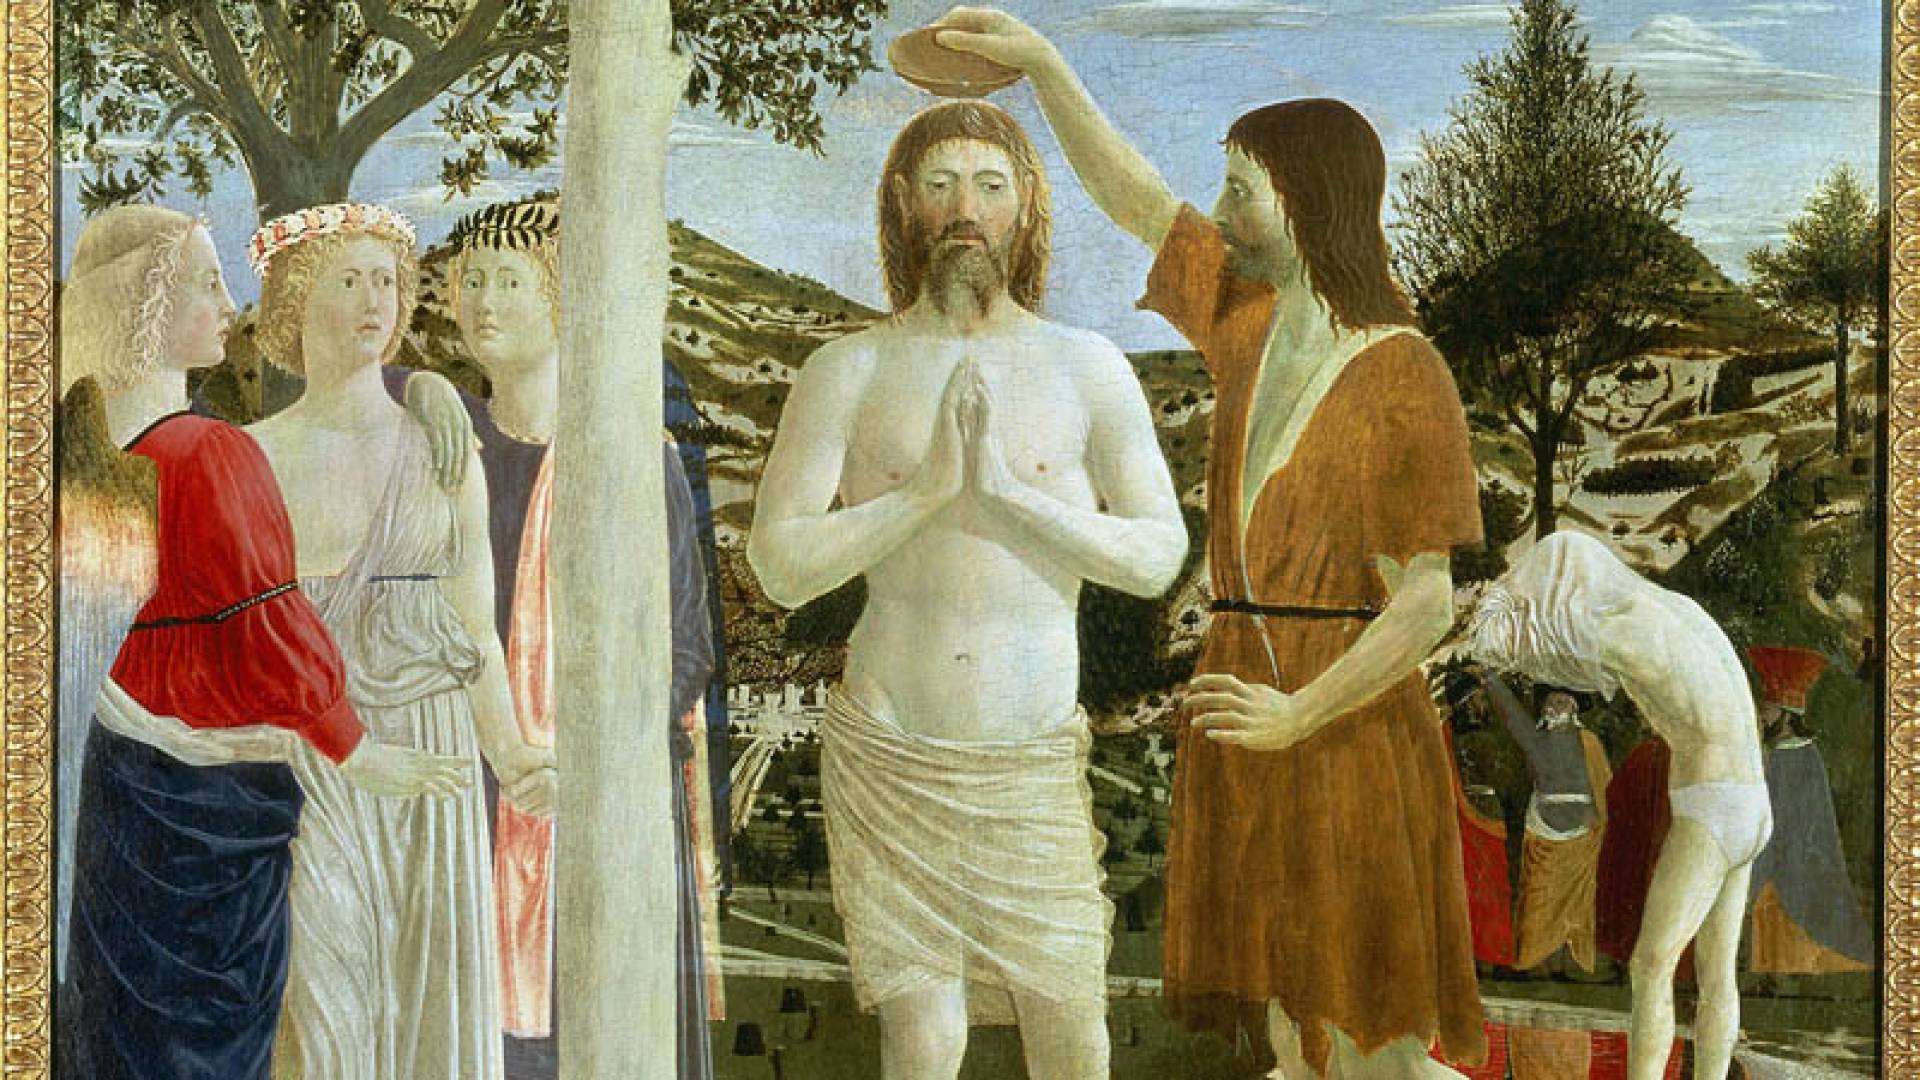 NATIONAL GALLERY, Piero Della Francesca